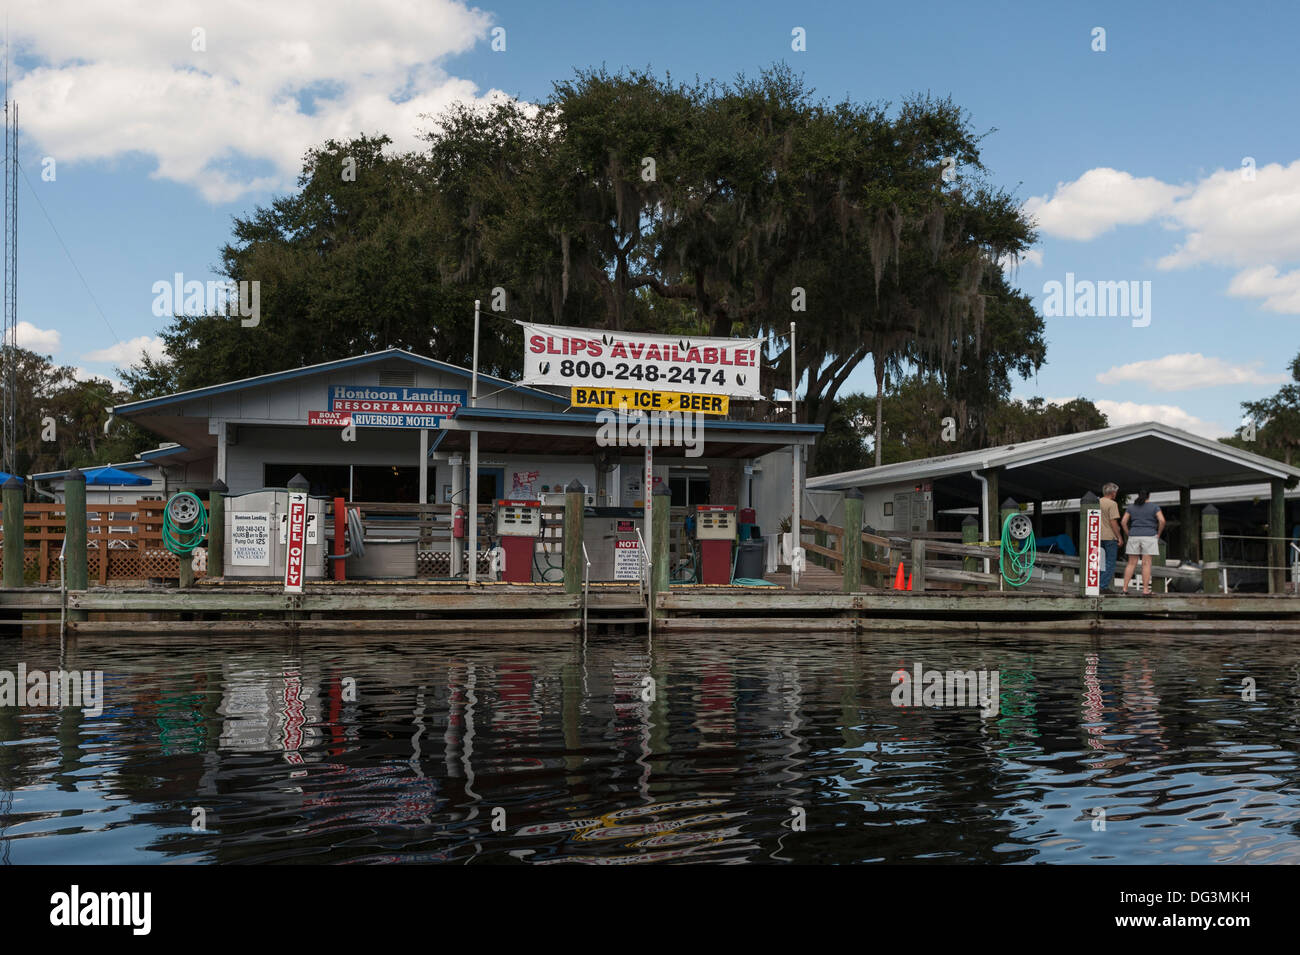 Eine Szene aus dem St.Johns-Fluss mit dem Boot in Central Florida USA zeigen Hontoon Landing Resort. Stockfoto